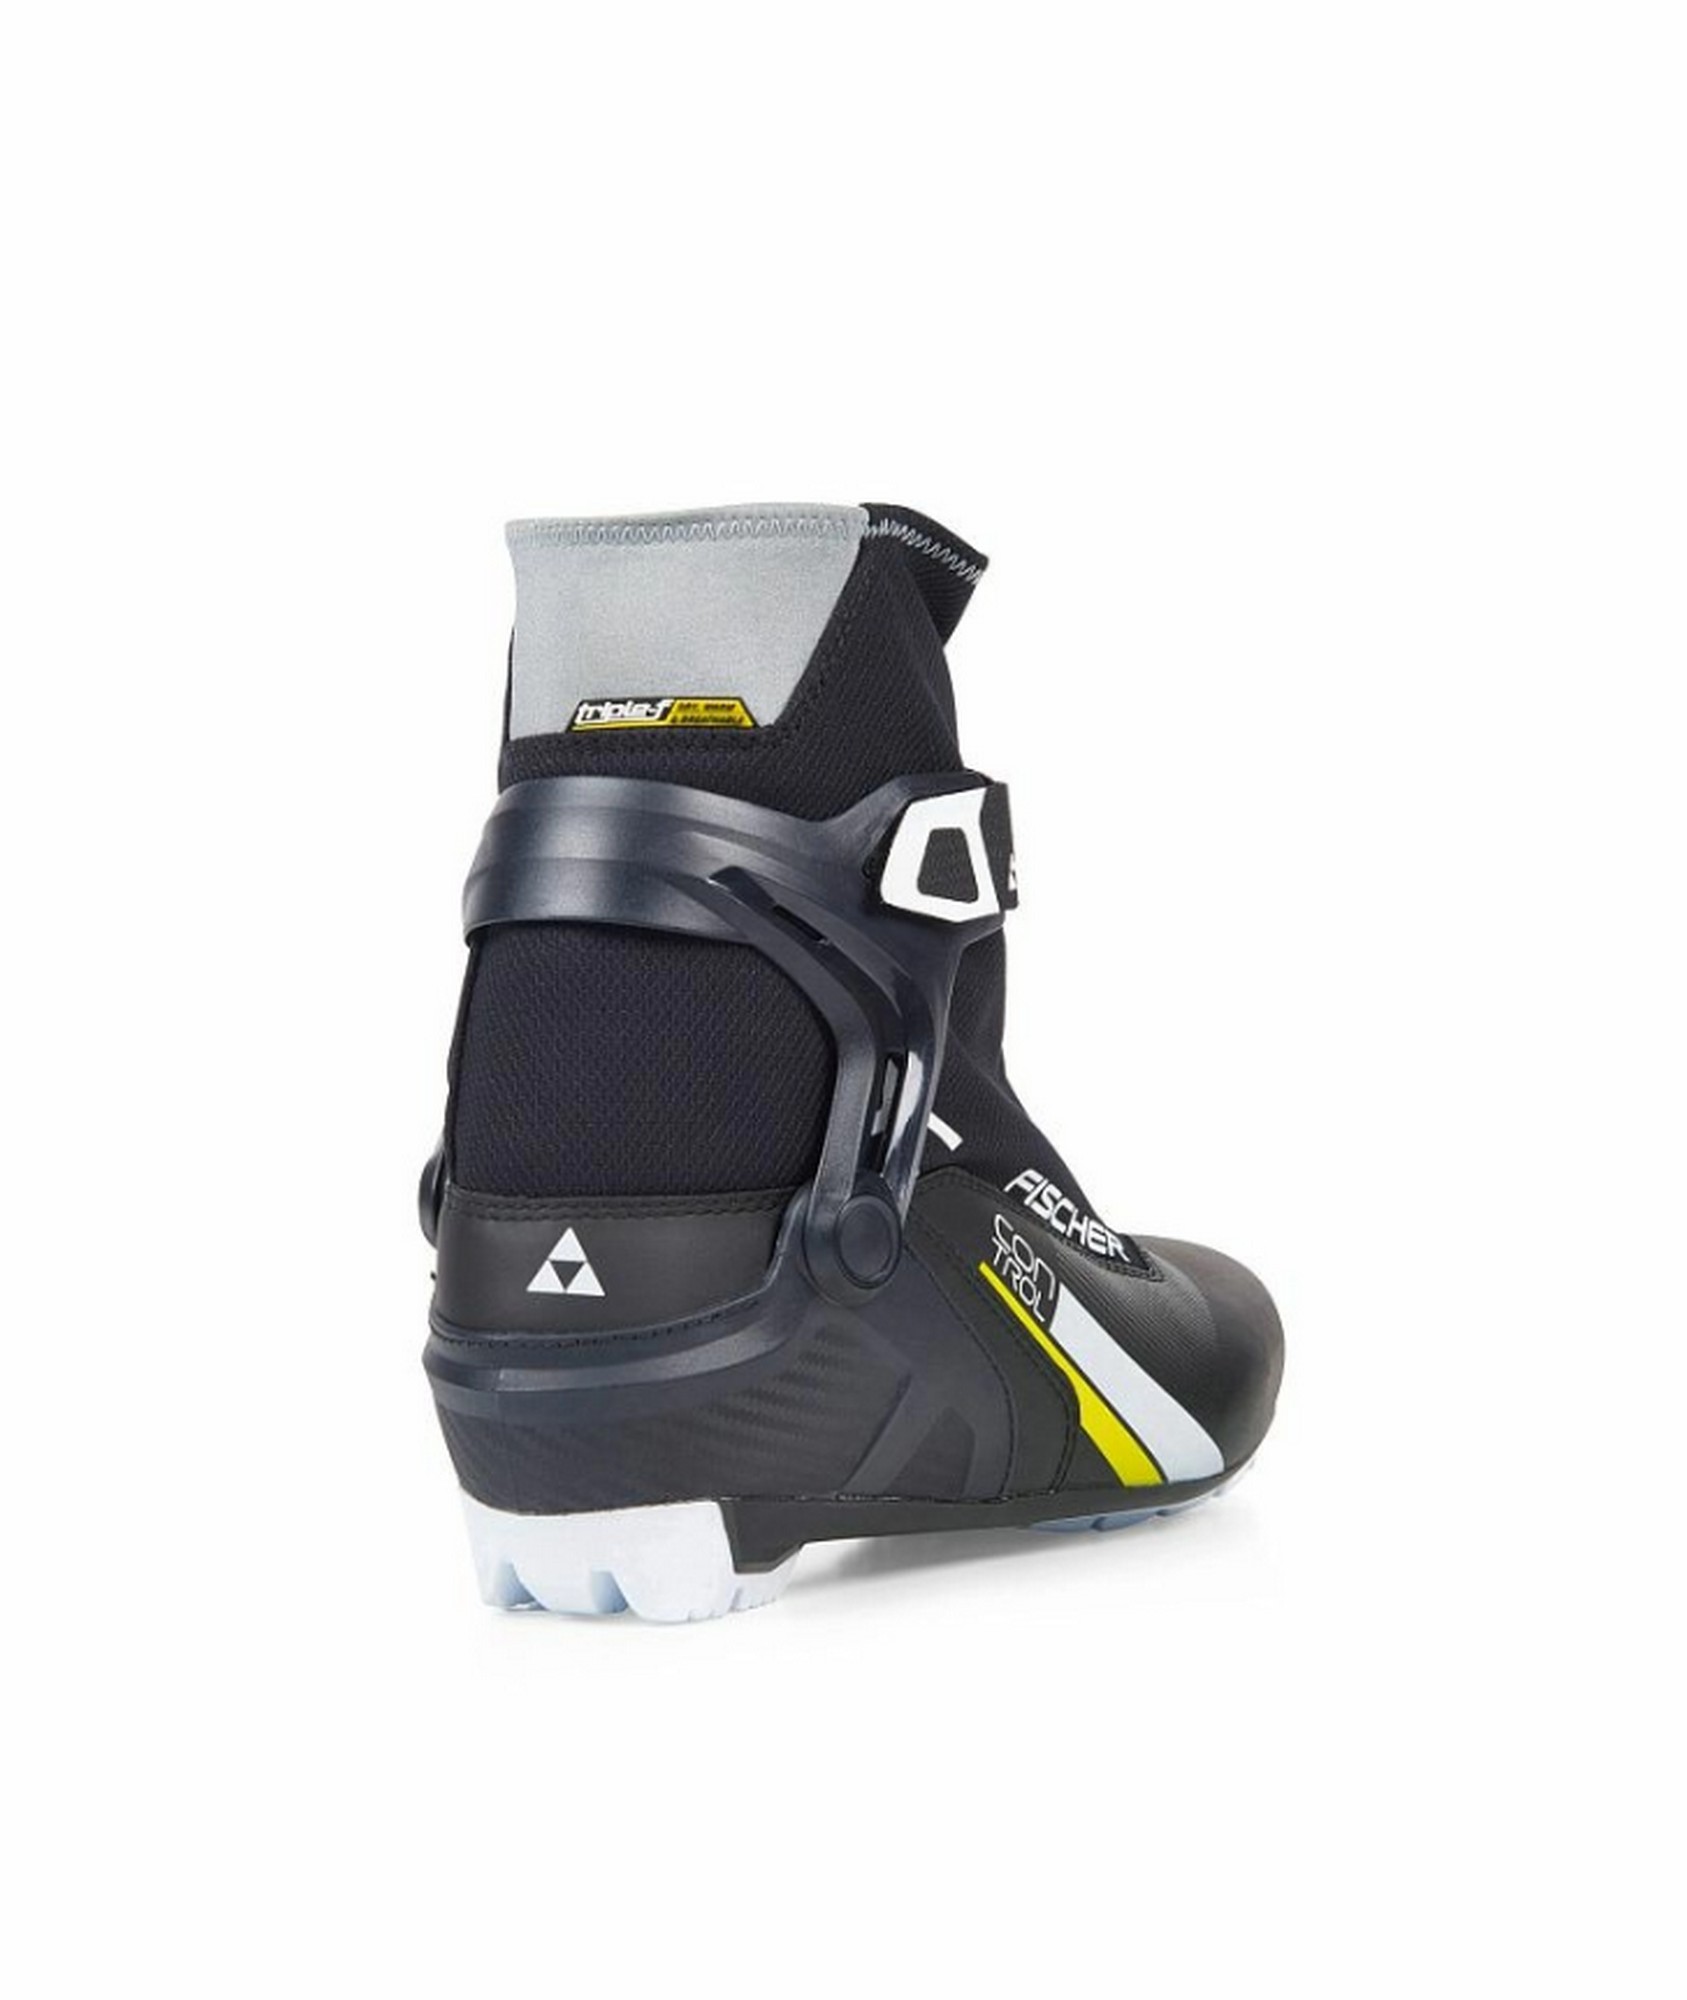 Лыжные ботинки Fischer NNN XC Control S20519 черный 1687_2000